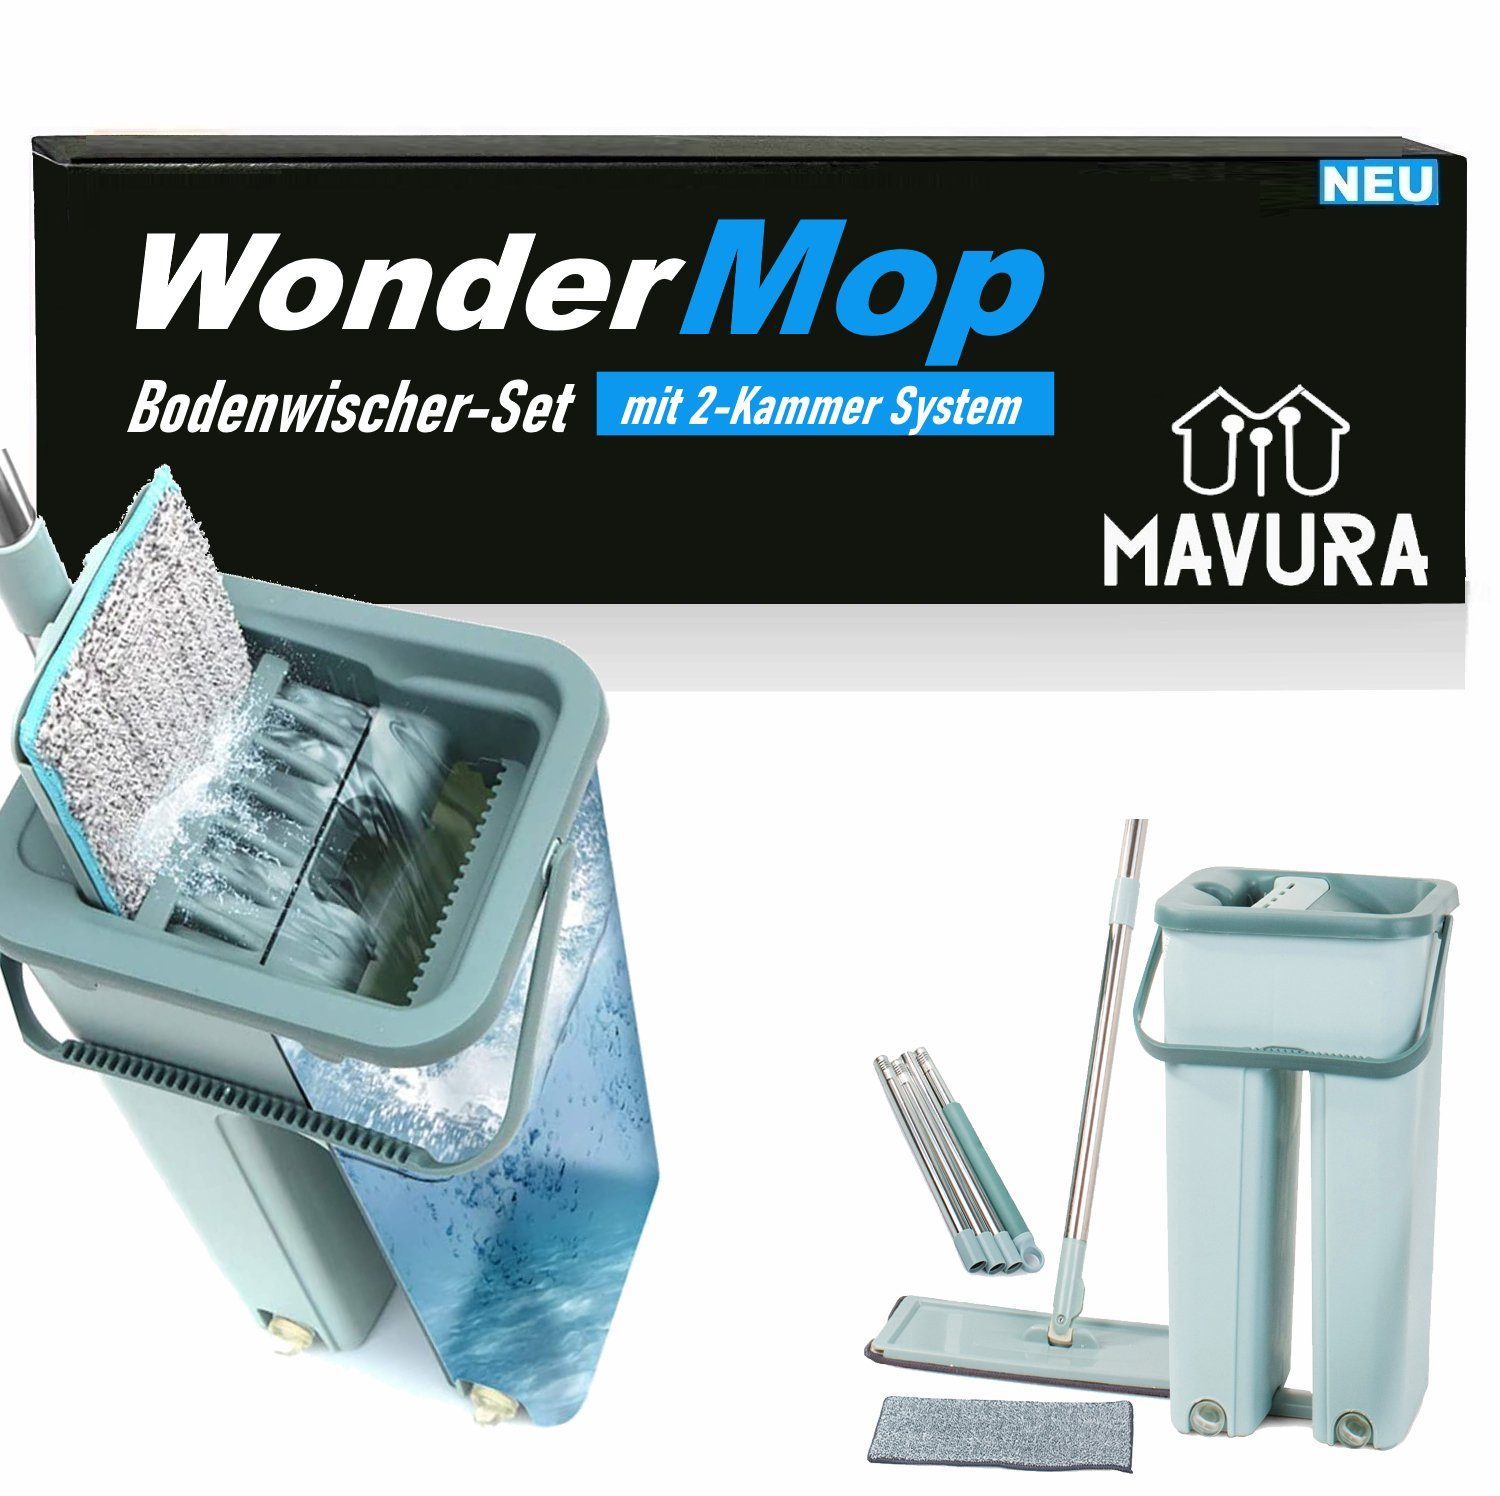 MAVURA Wischmopp WonderMop Profi Bodenwischer Set - Wischmop mit Eimer, Mikrofaser-Mopp, und 2-Kammer Auswringfunktion, - Effektive Reinigung von Böden und Oberflächen | Wischmopps